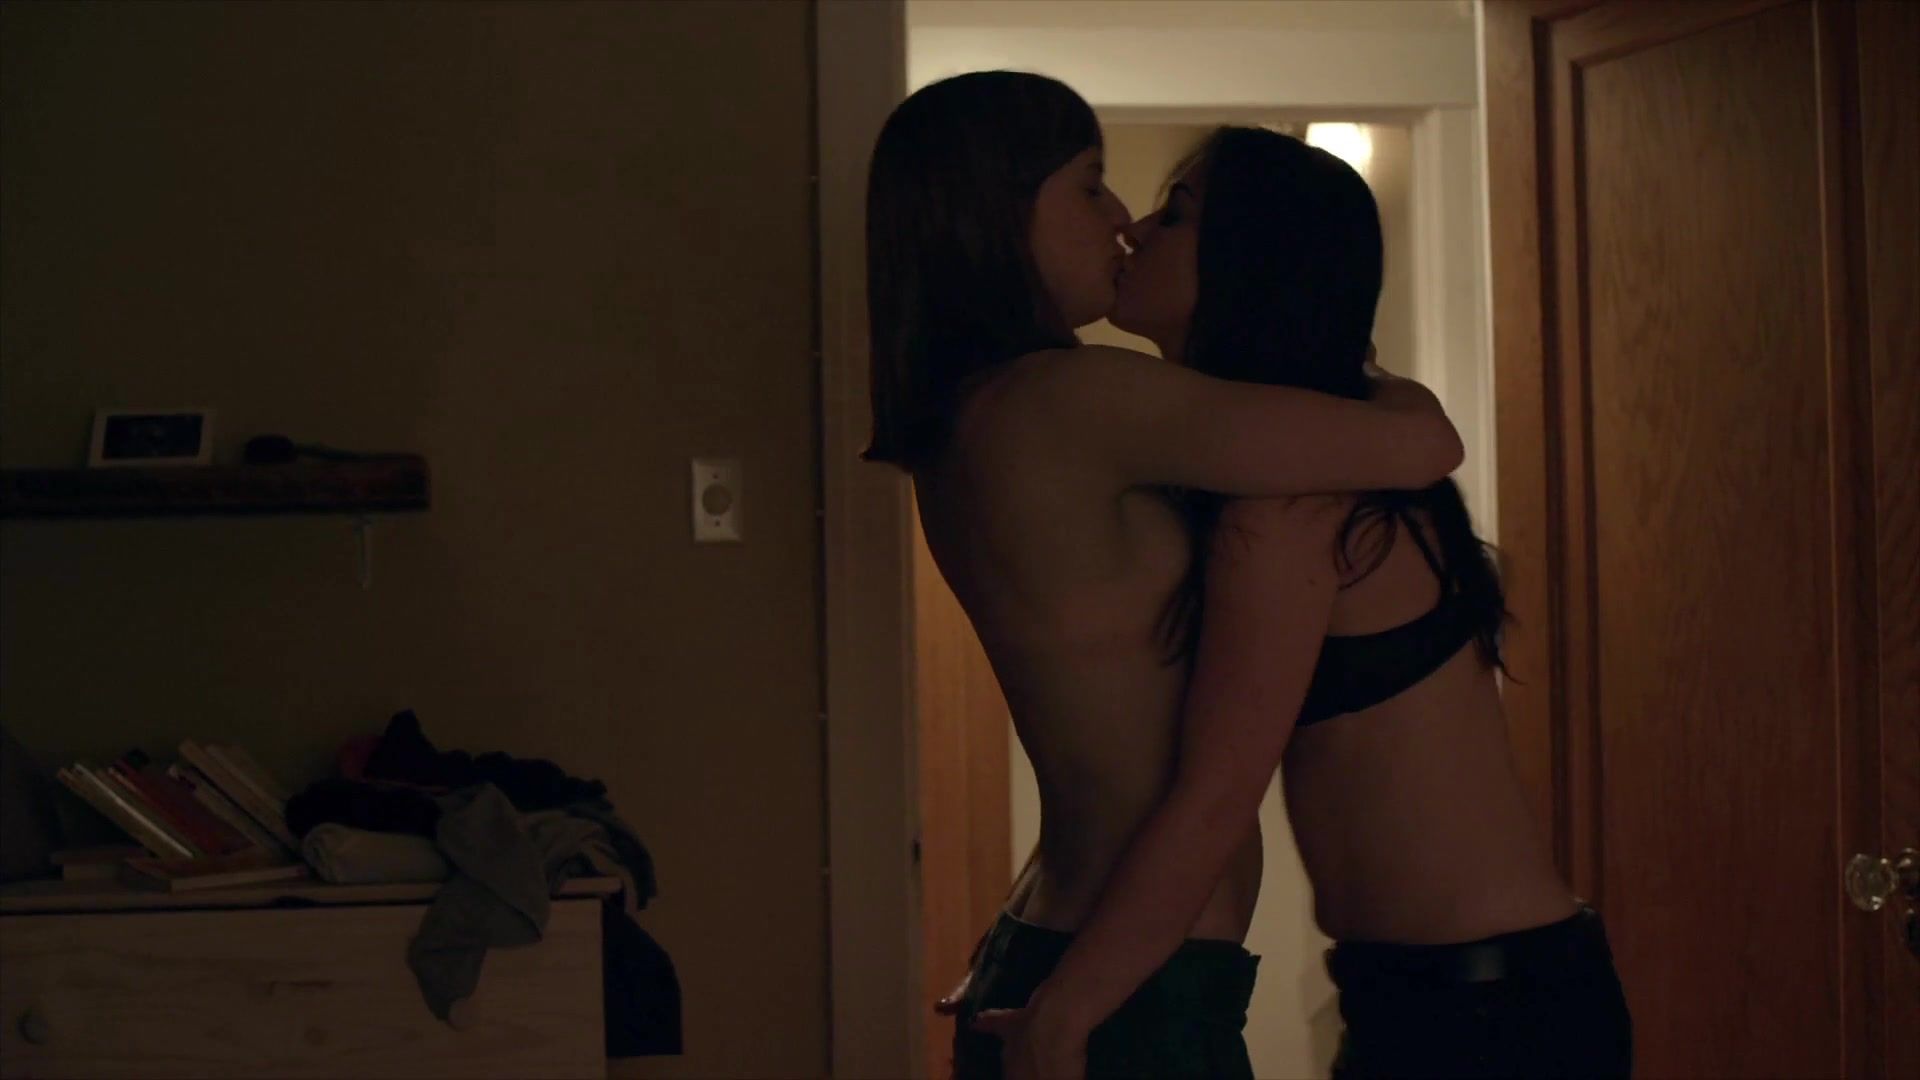 Giffies Lesbian short scene Alexa-Jeanne Dube, Kimberly Laferriere Nude - Feminin_Feminin s01e05 (2014) Gay Public - 2